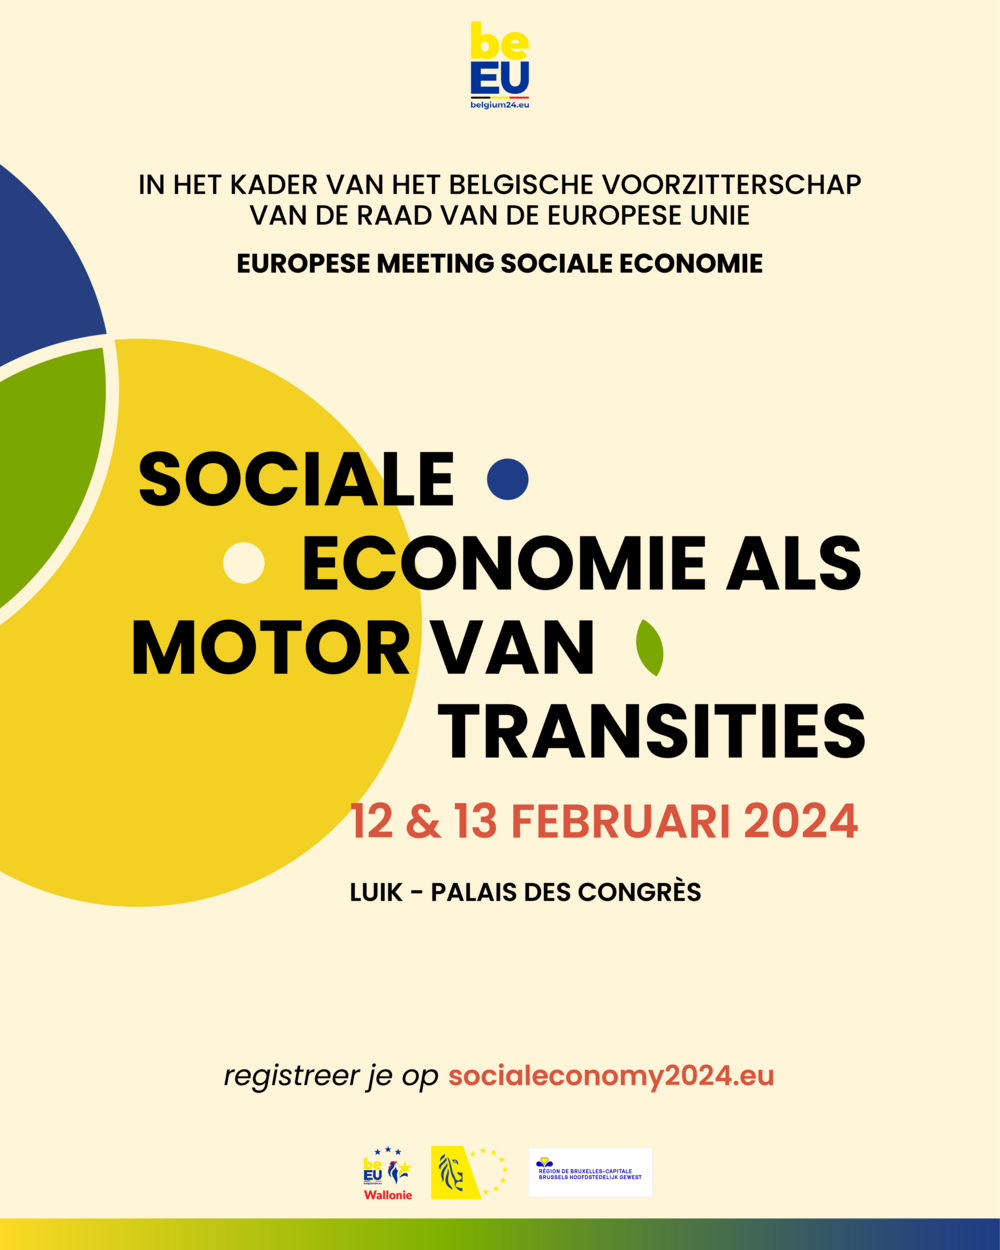 Europese Conferentie Sociale Economie 12 & 13 februari 2024